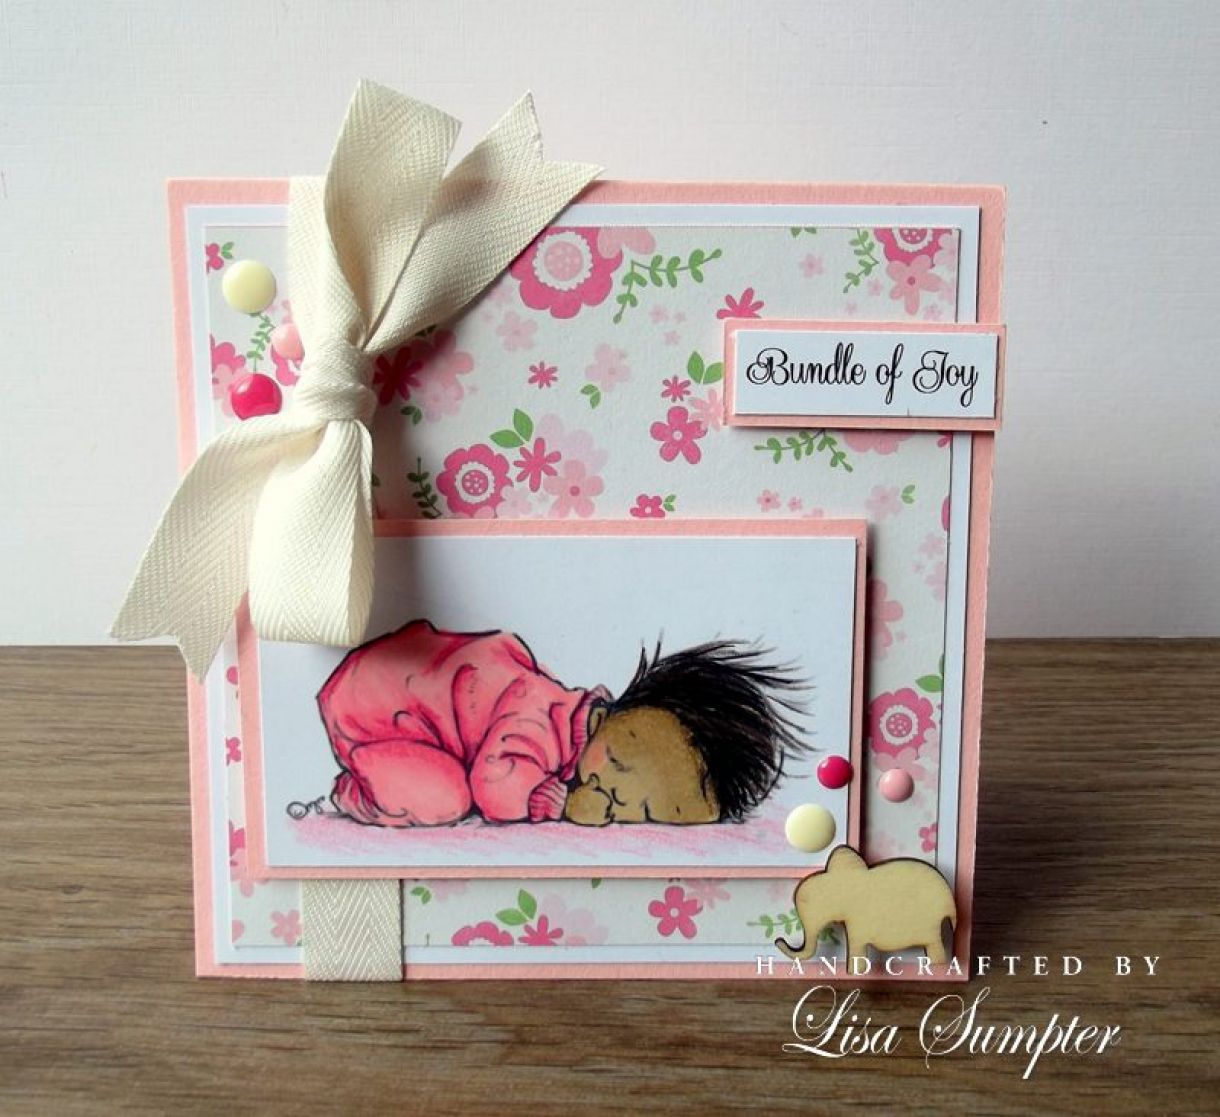 New Baby Card  Lisa  Sumpter